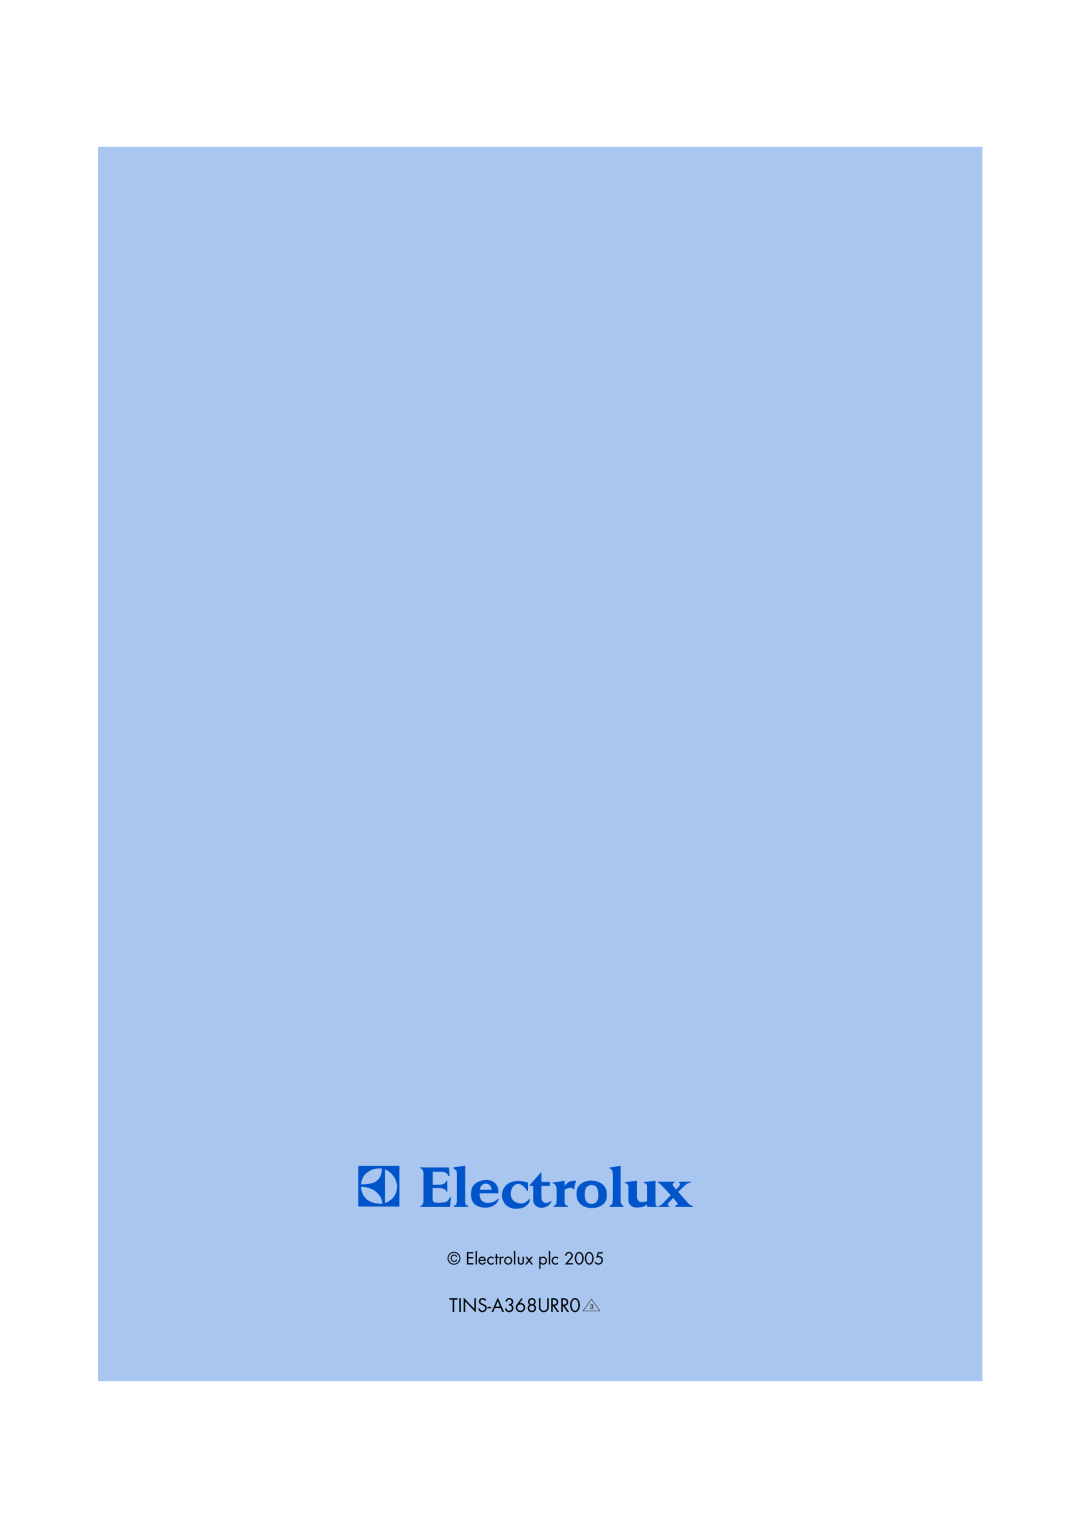 Electrolux EMS2685 manual TINS-A368URR0, Electrolux plc 